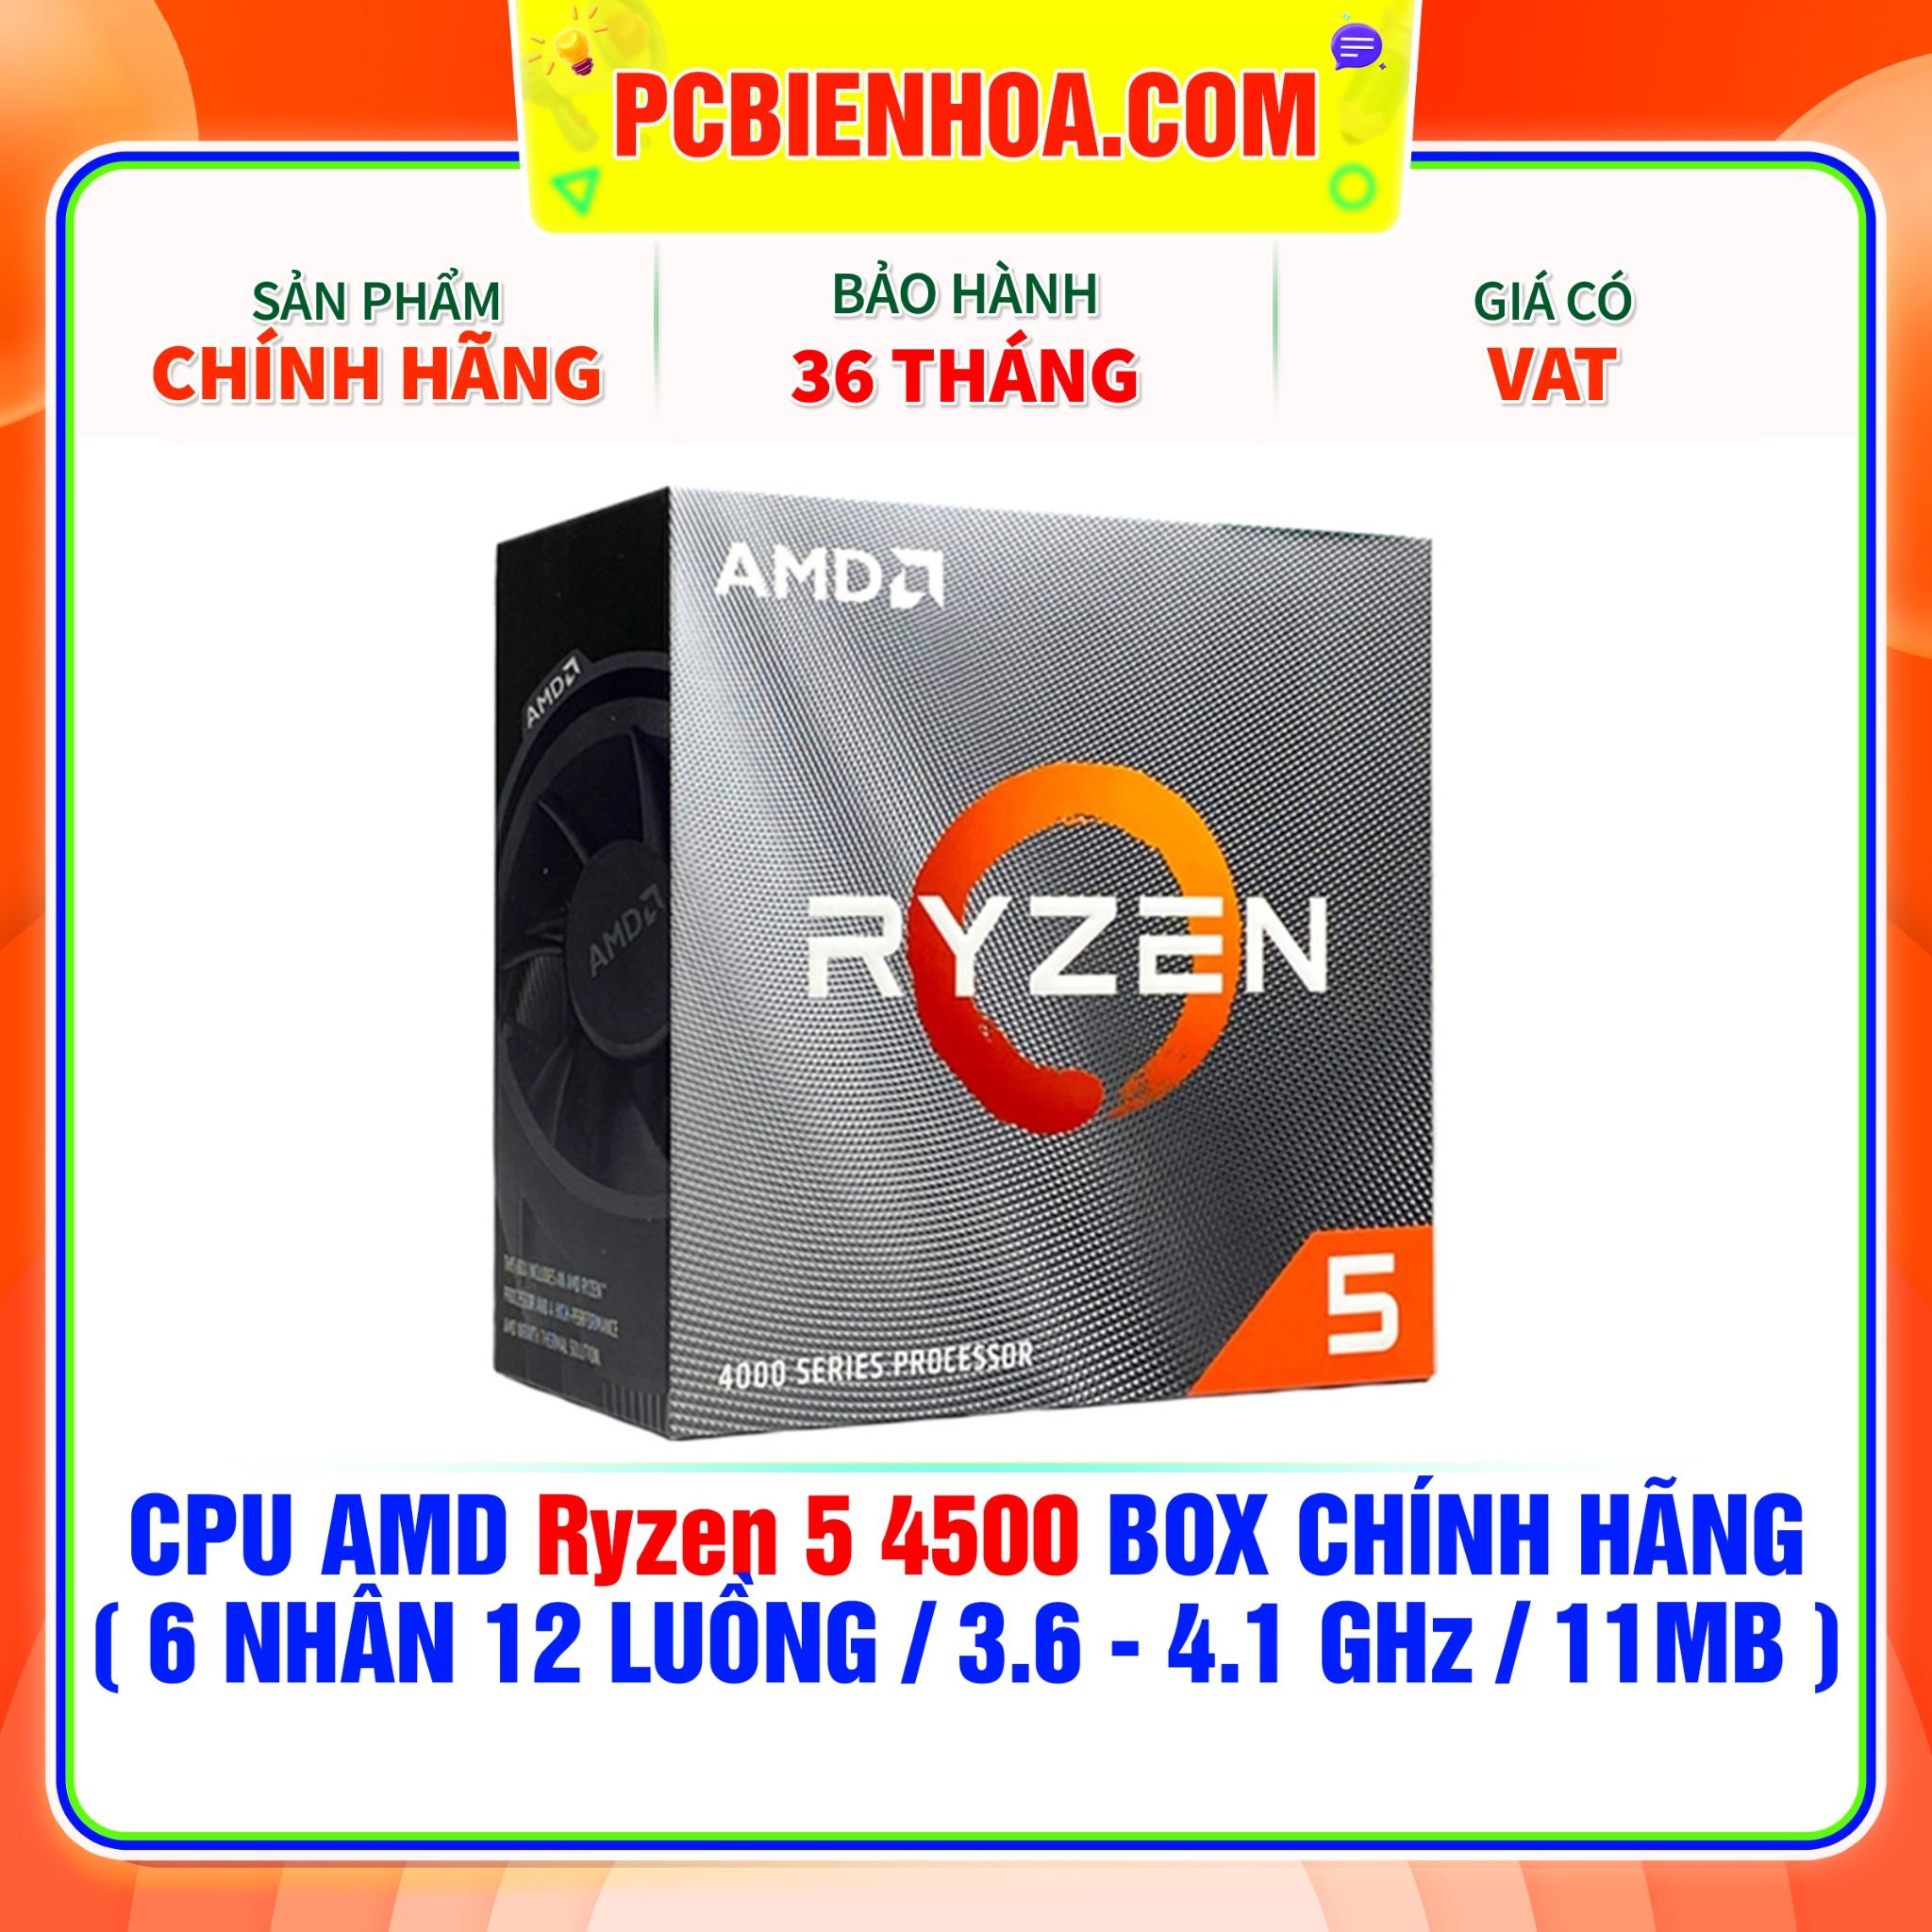  CPU AMD Ryzen 5 4500 BOX CHÍNH HÃNG ( 6 NHÂN 12 LUỒNG / 3.6 - 4.1 GHz / 11MB ) 